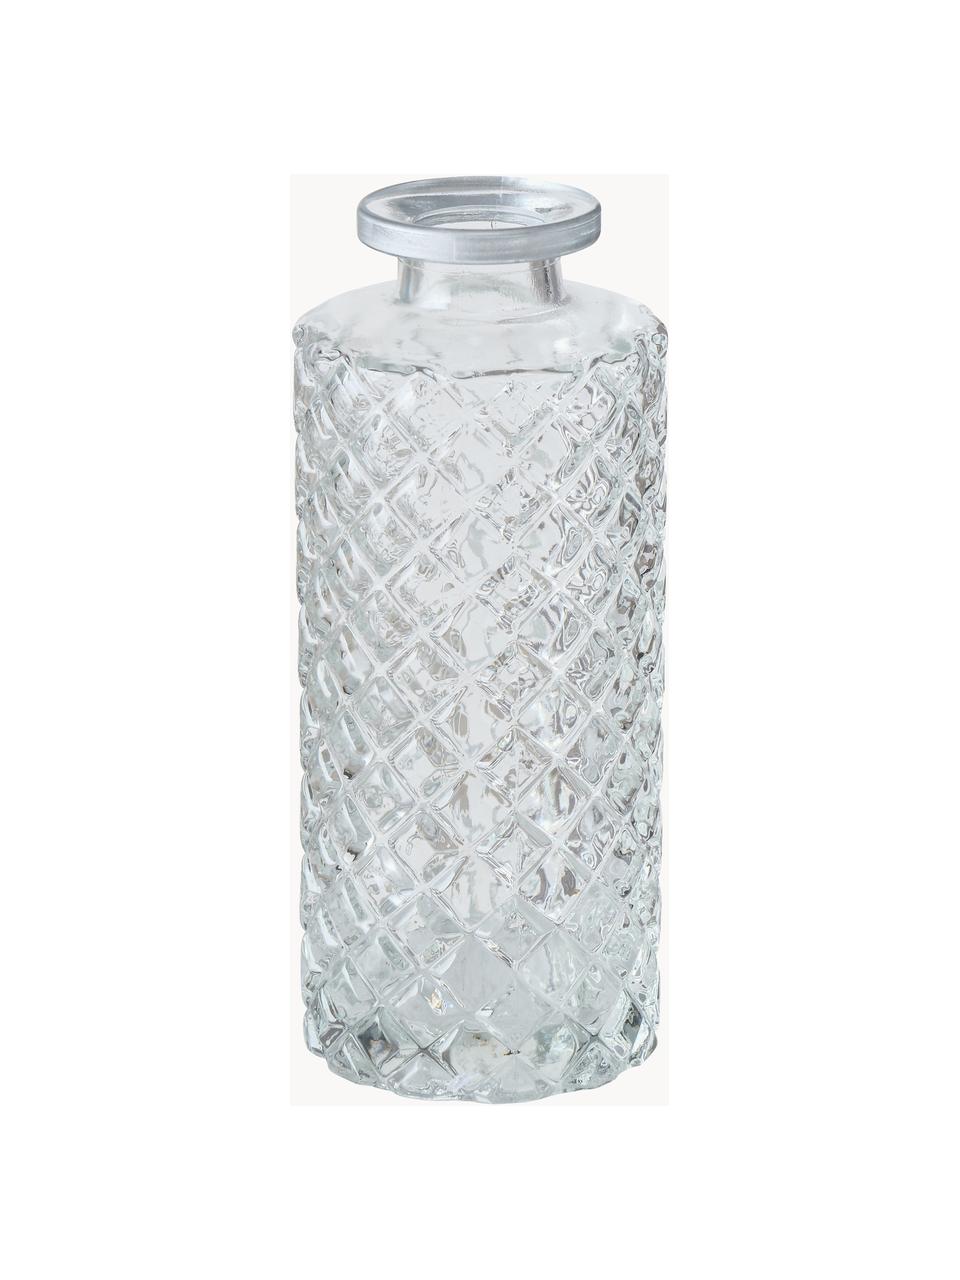 Kleine Vasen Adore aus Glas, 3er-Set, Glas, Transparent, Silberfarben, Ø 5 x H 13 cm